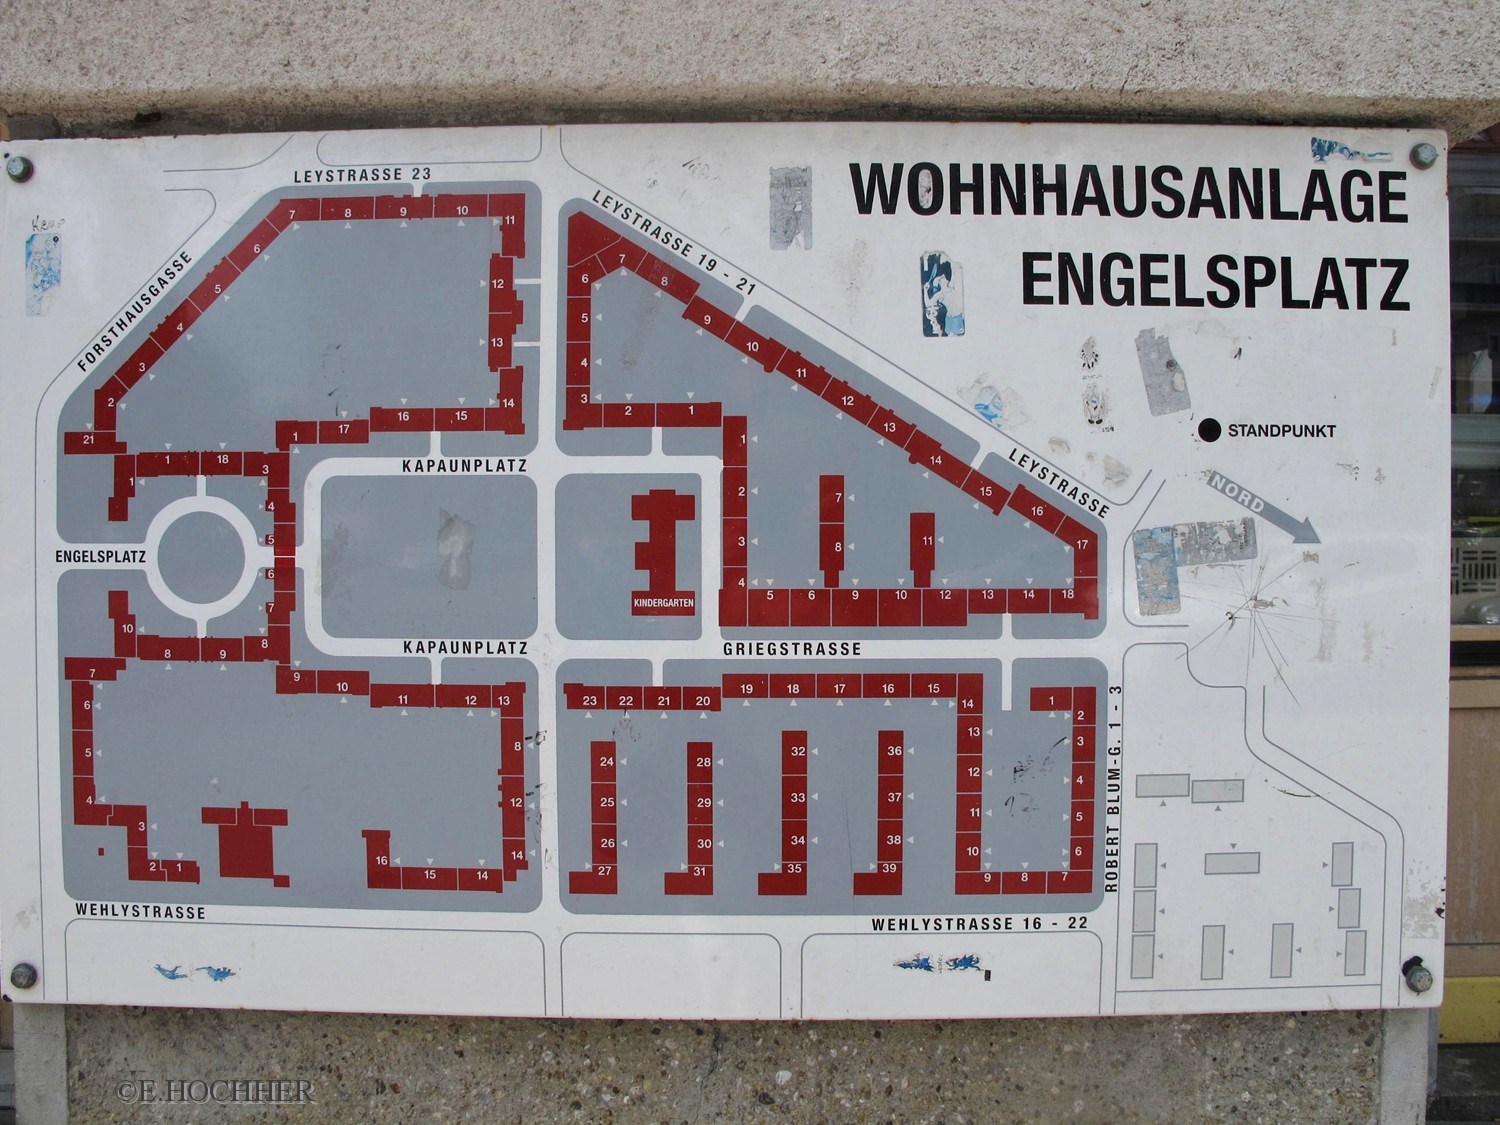 Übersicht Wohnhausanlage Engels-Hof in Wien-Brigittenau.